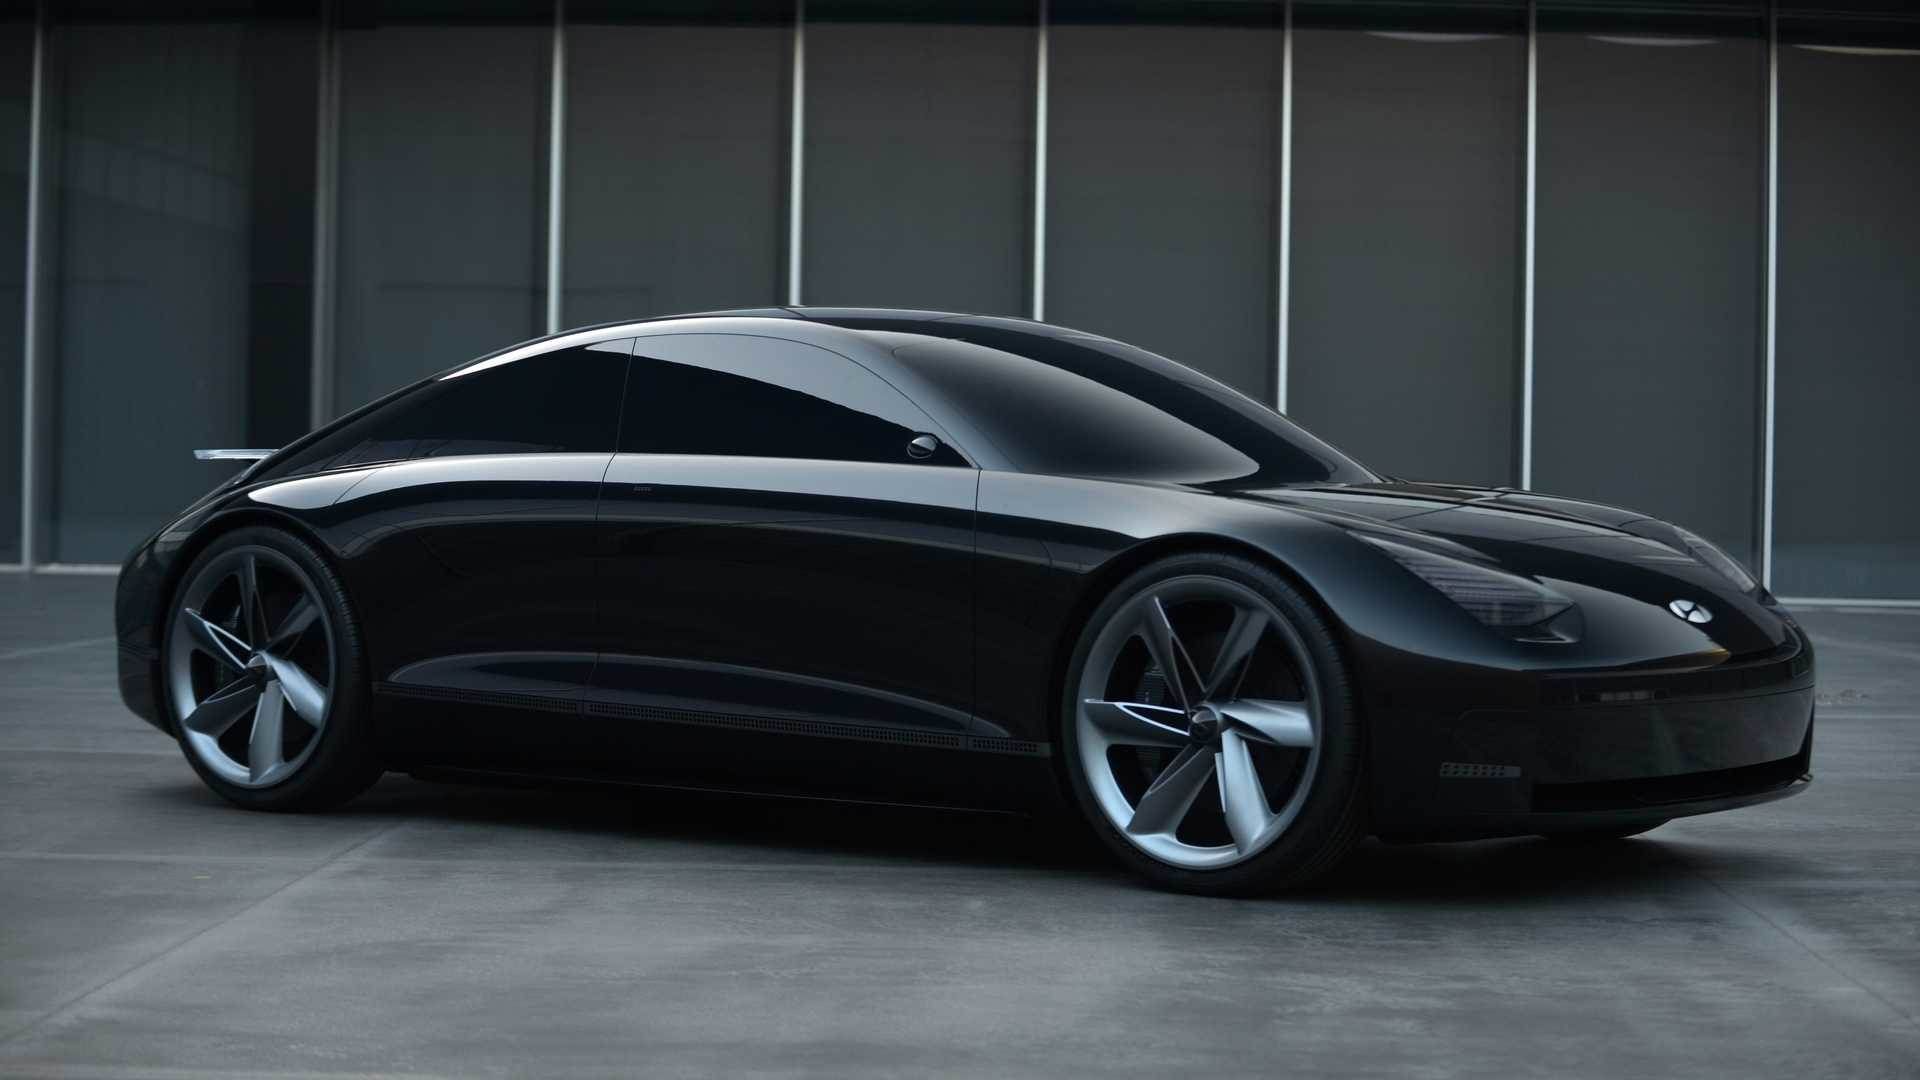 Hyundai Prophecy Concept / خودروی مفهومی هیوندای پرافسی